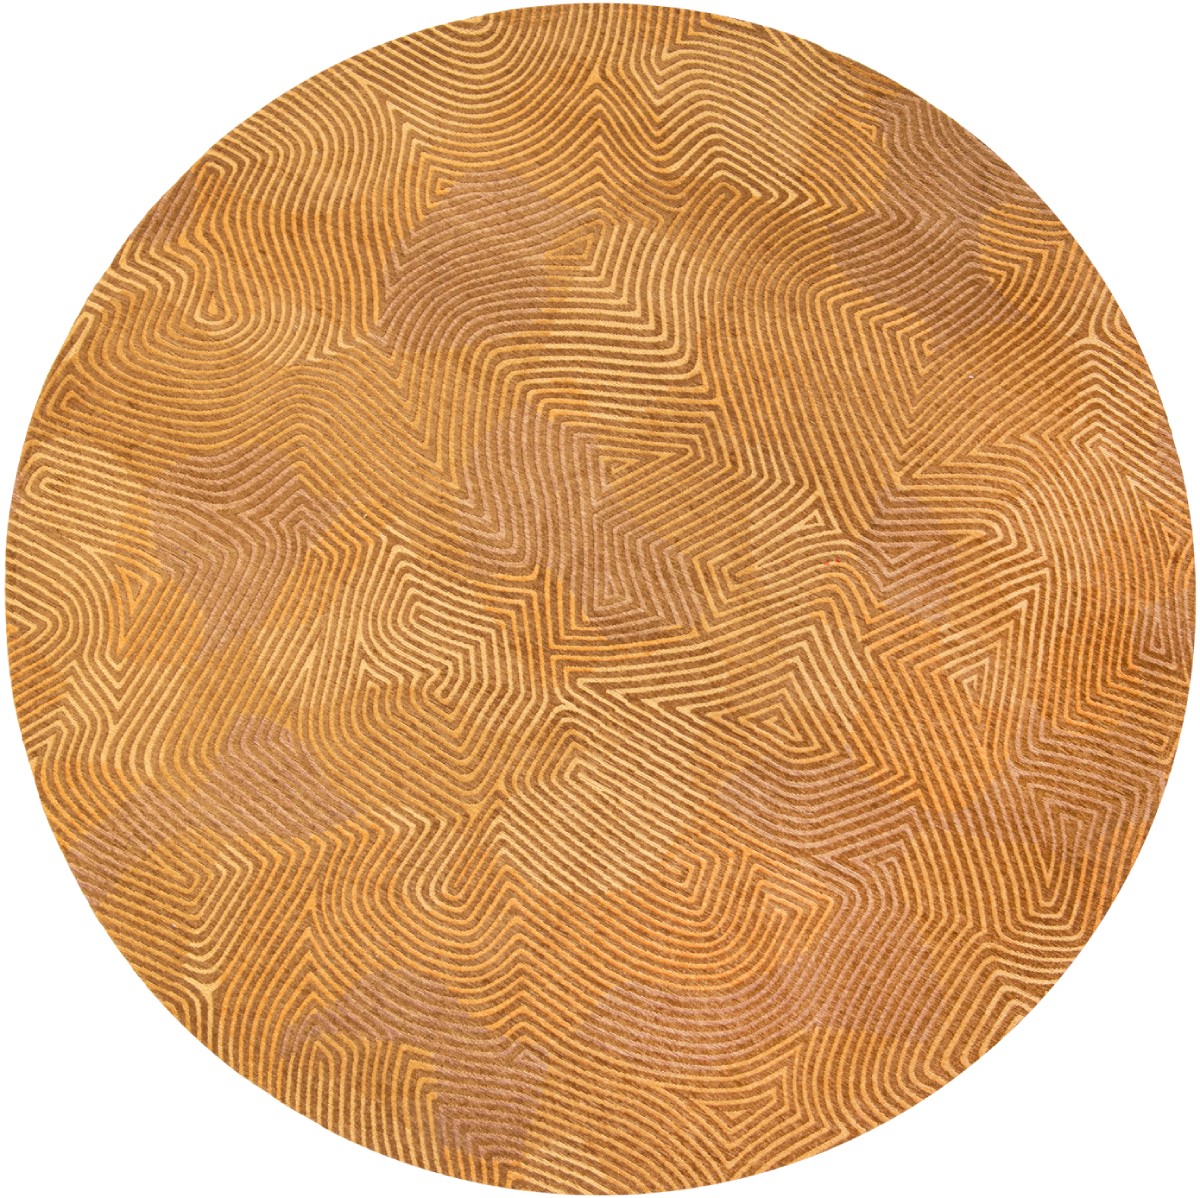 Jelly Gold Round Rug ☞ Size: Round 4' 7" (Ø 140 cm)